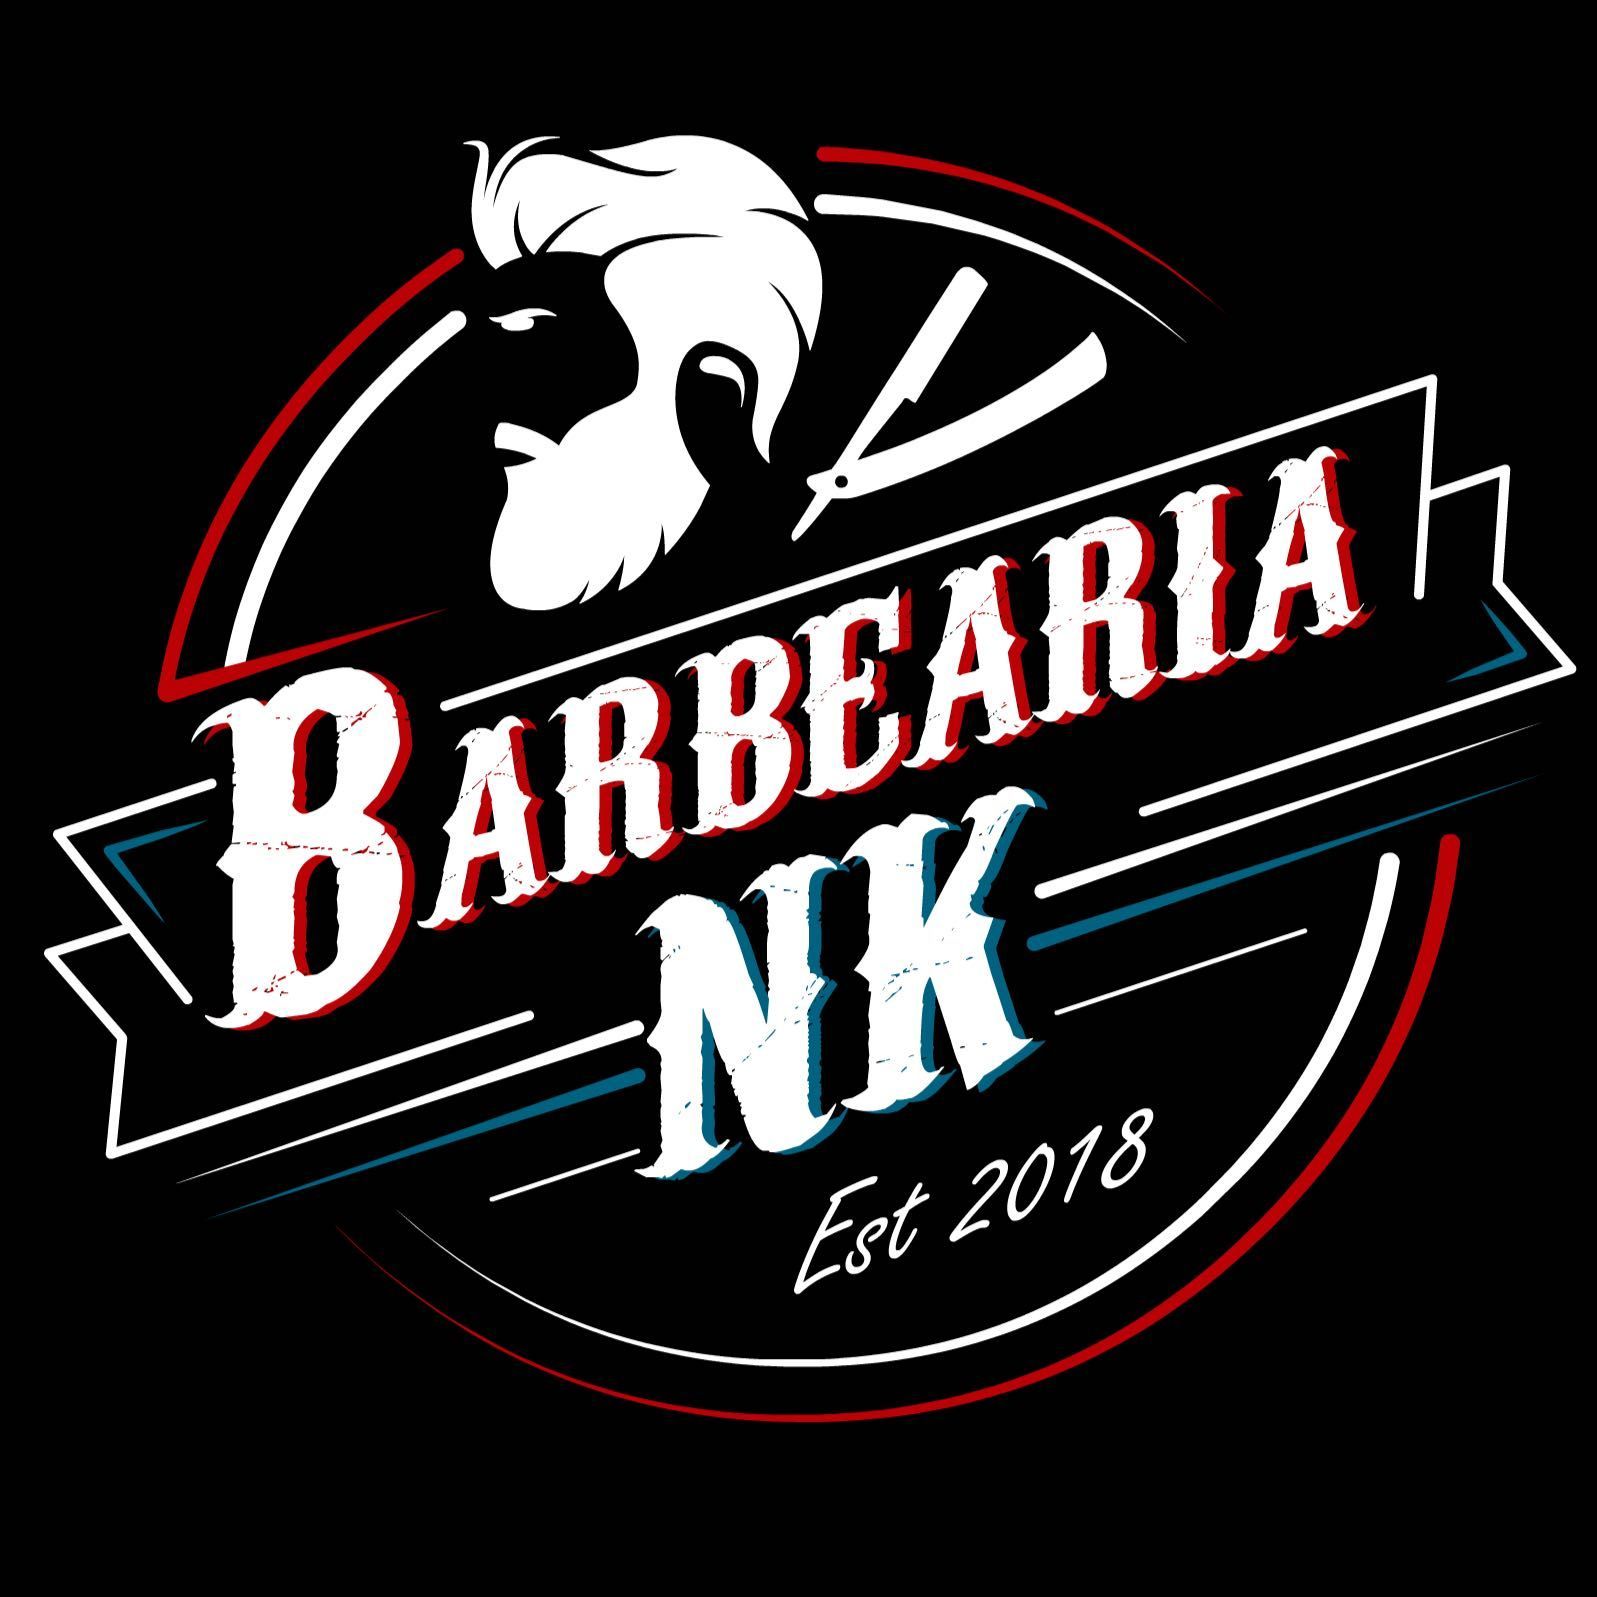 Barbearia NK, rua augusto gil 425, 02670-070, São Paulo